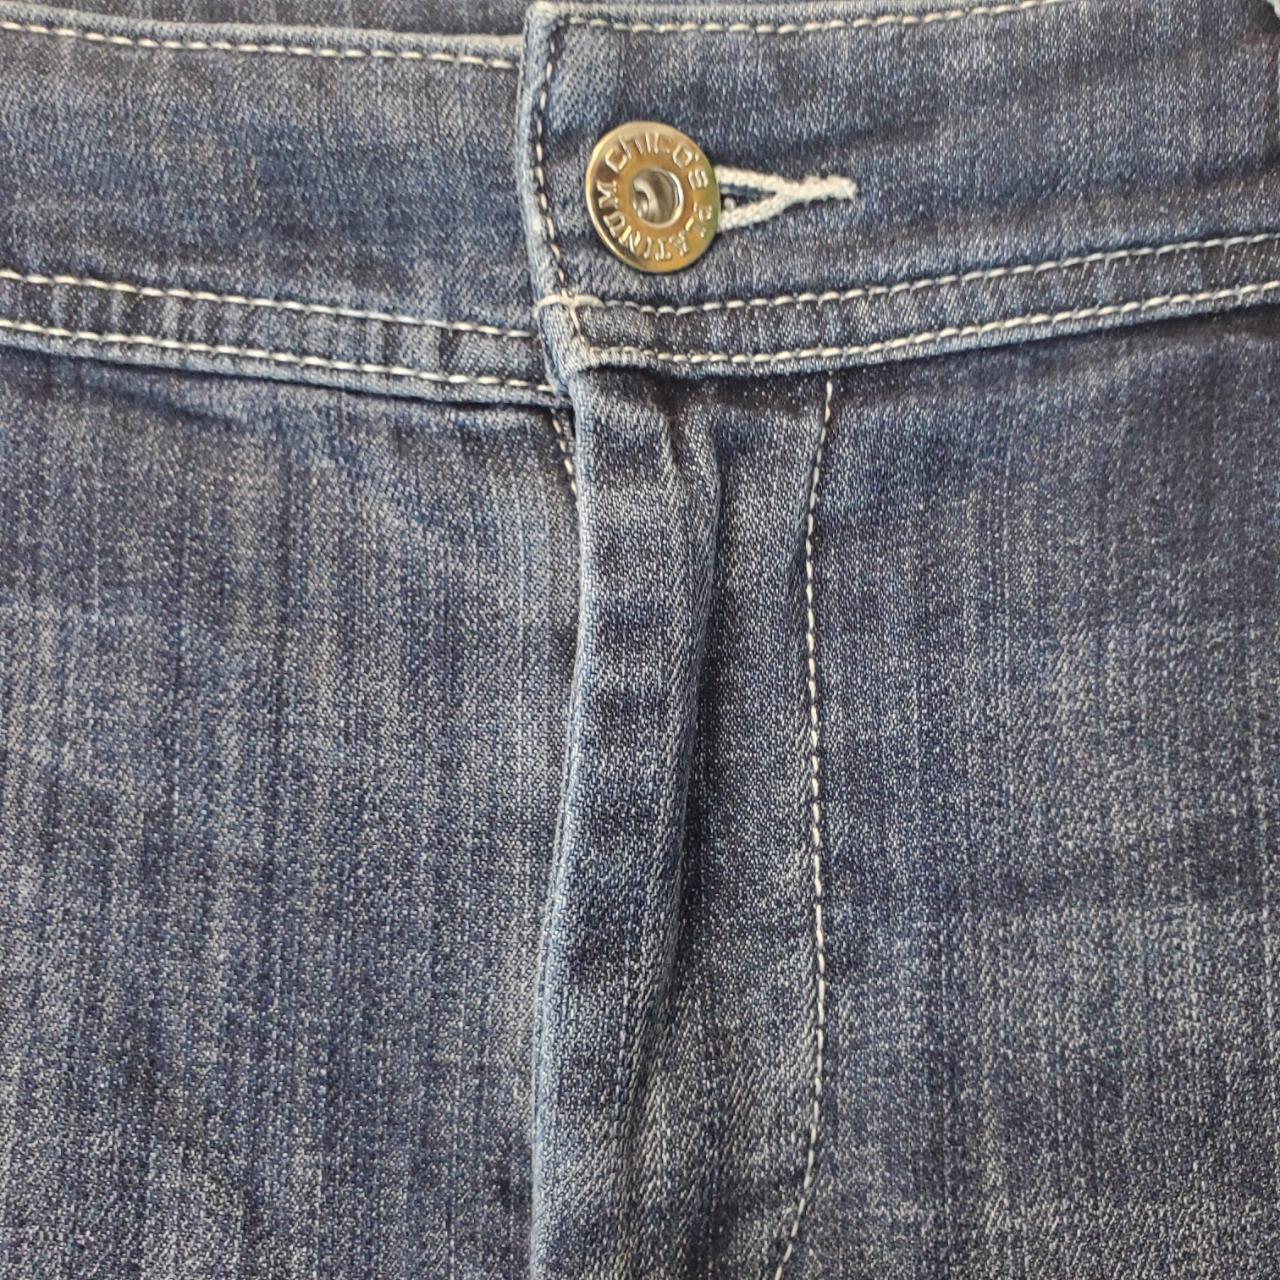 Chico's Zippers Boyfriend Jeans for Women